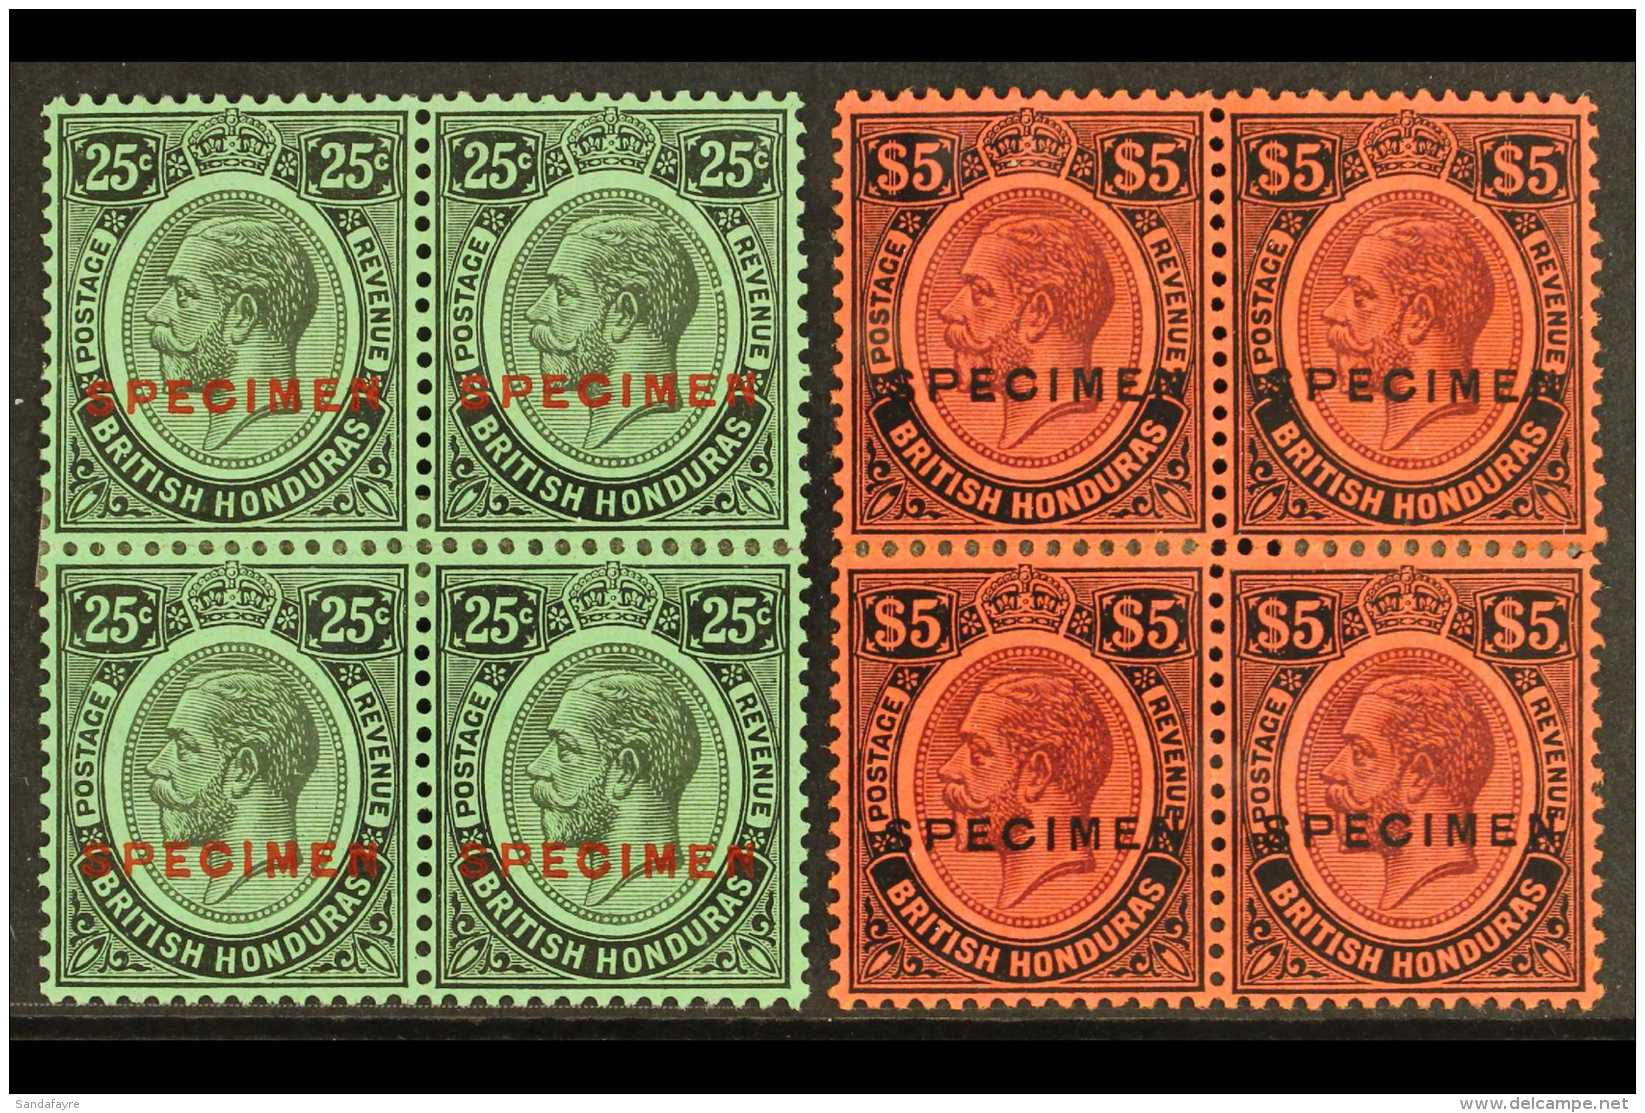 1922 25c Black On Emerald Overprinted "Specimen" In Red And $5 Purple And Black On Red Ovptd "Specimen" In Black,... - Honduras Britannique (...-1970)